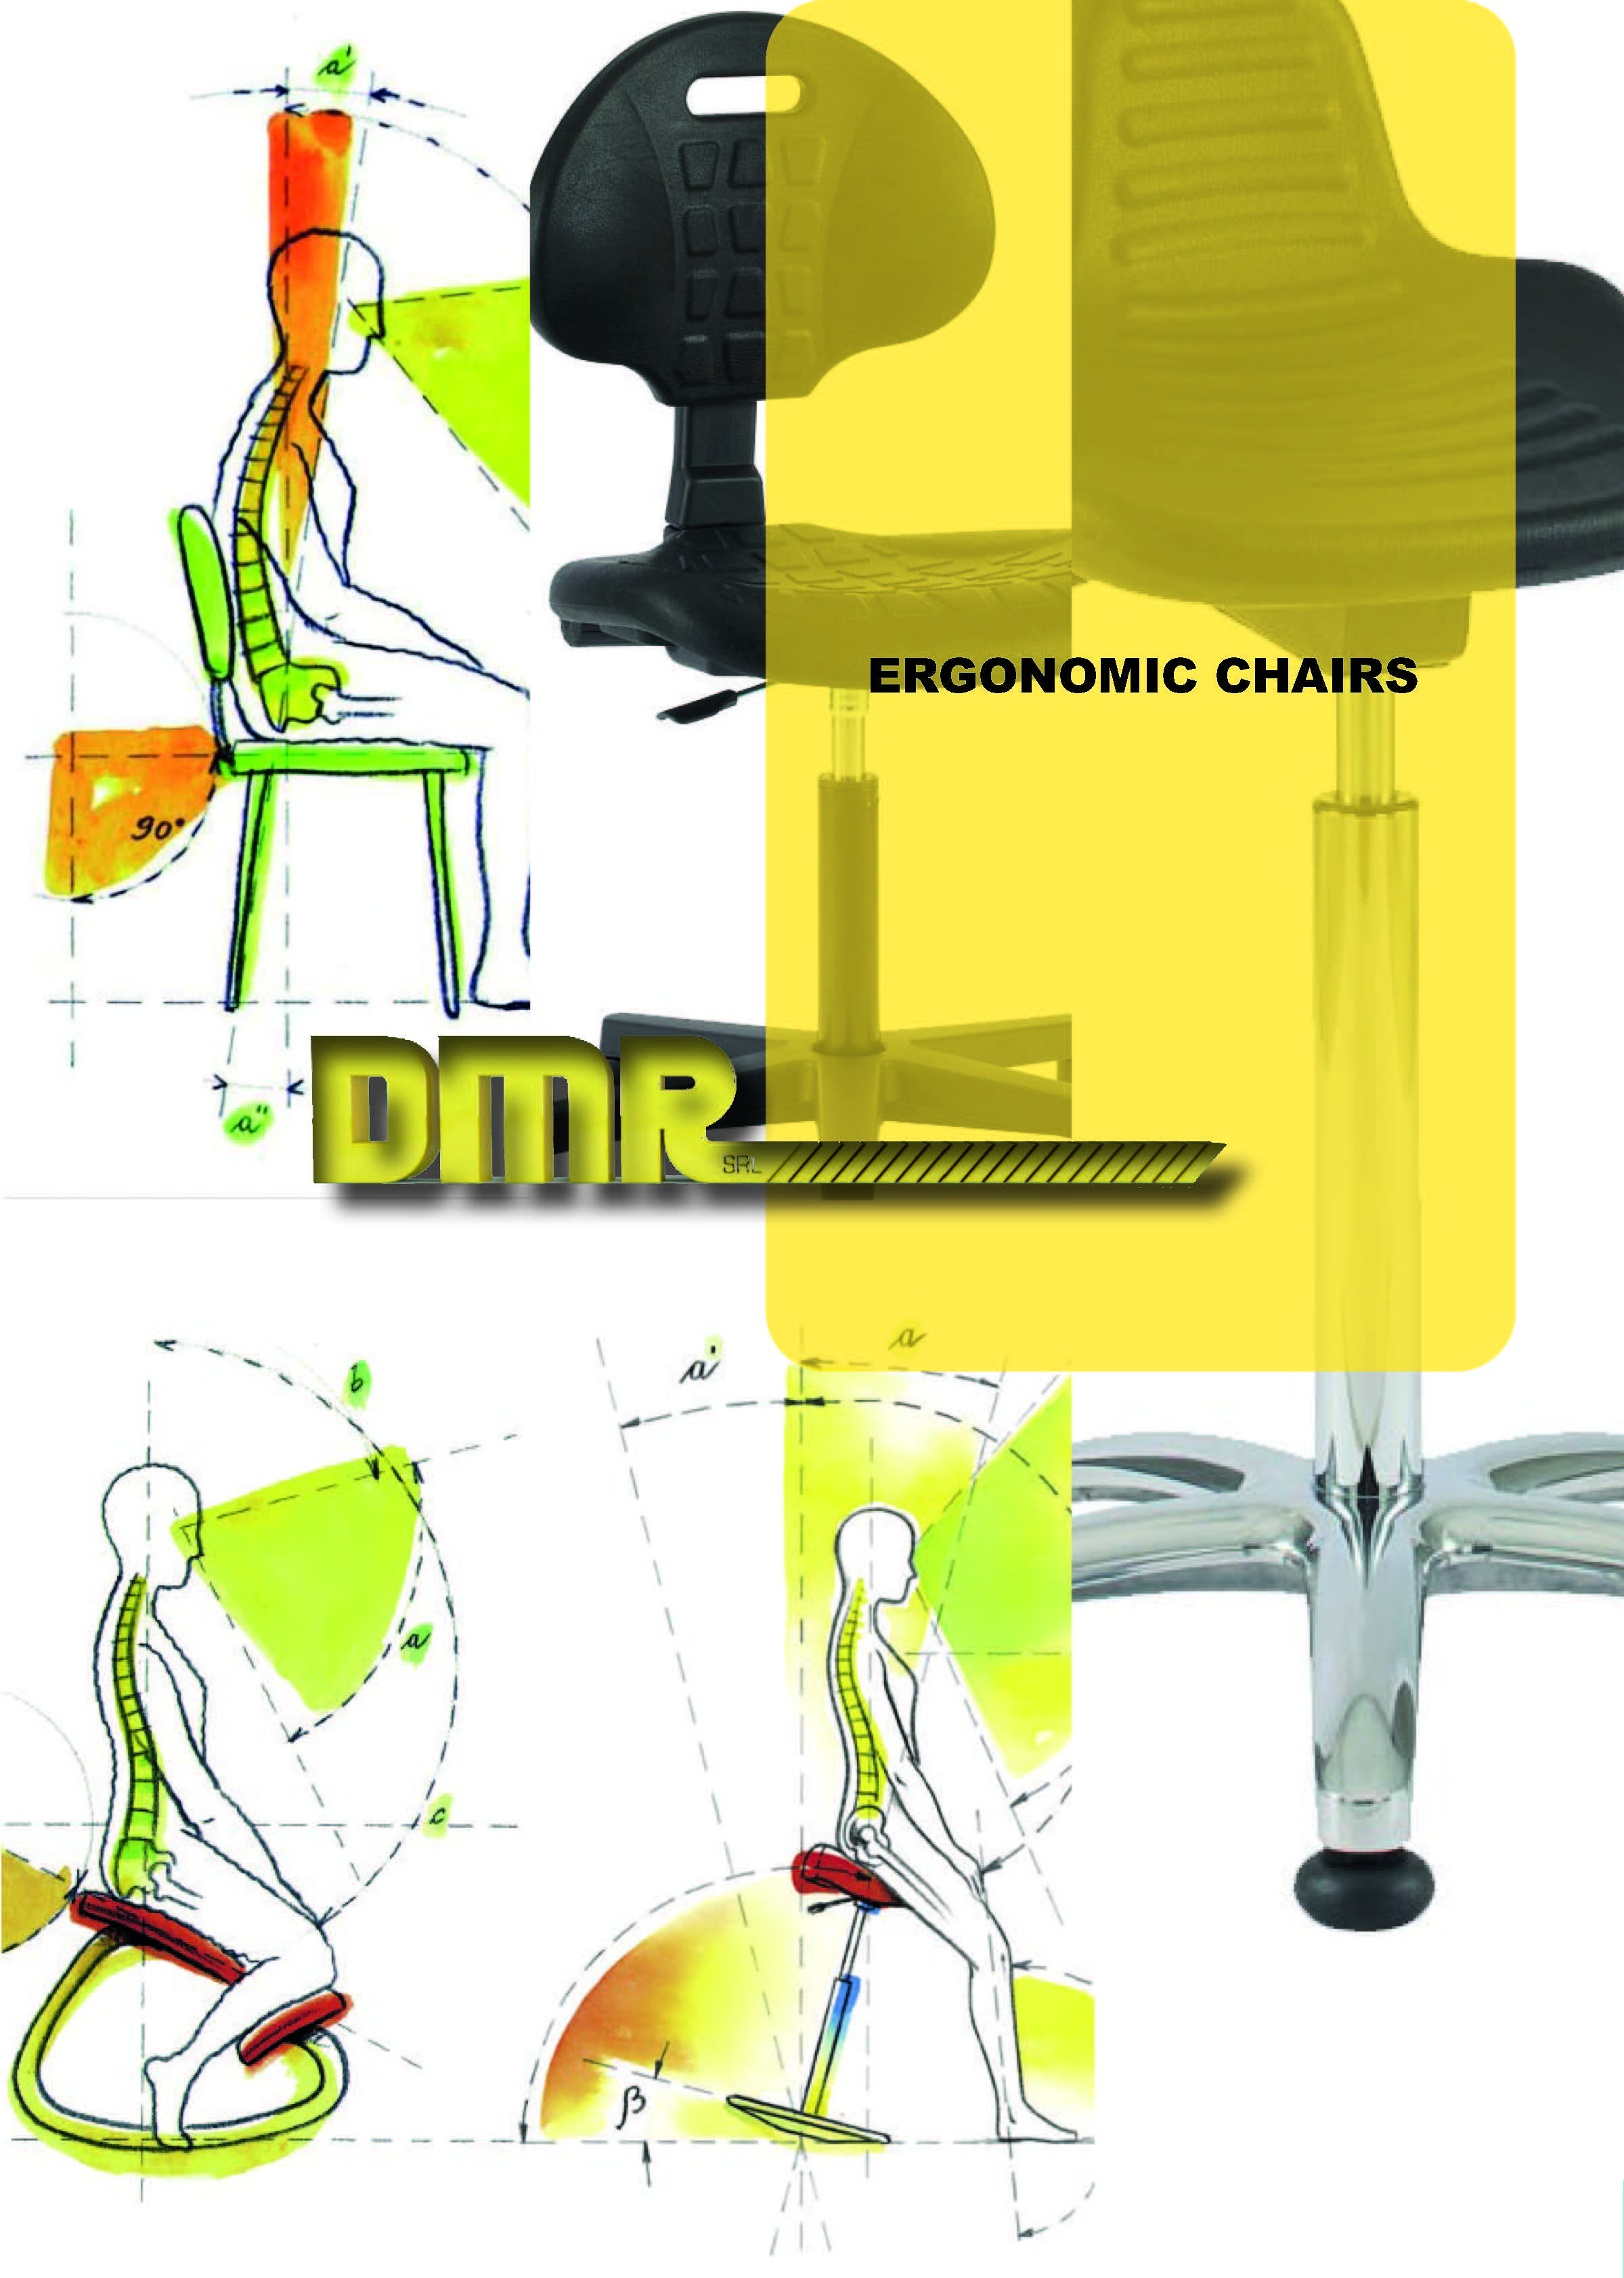 ergonomic chairs catalog